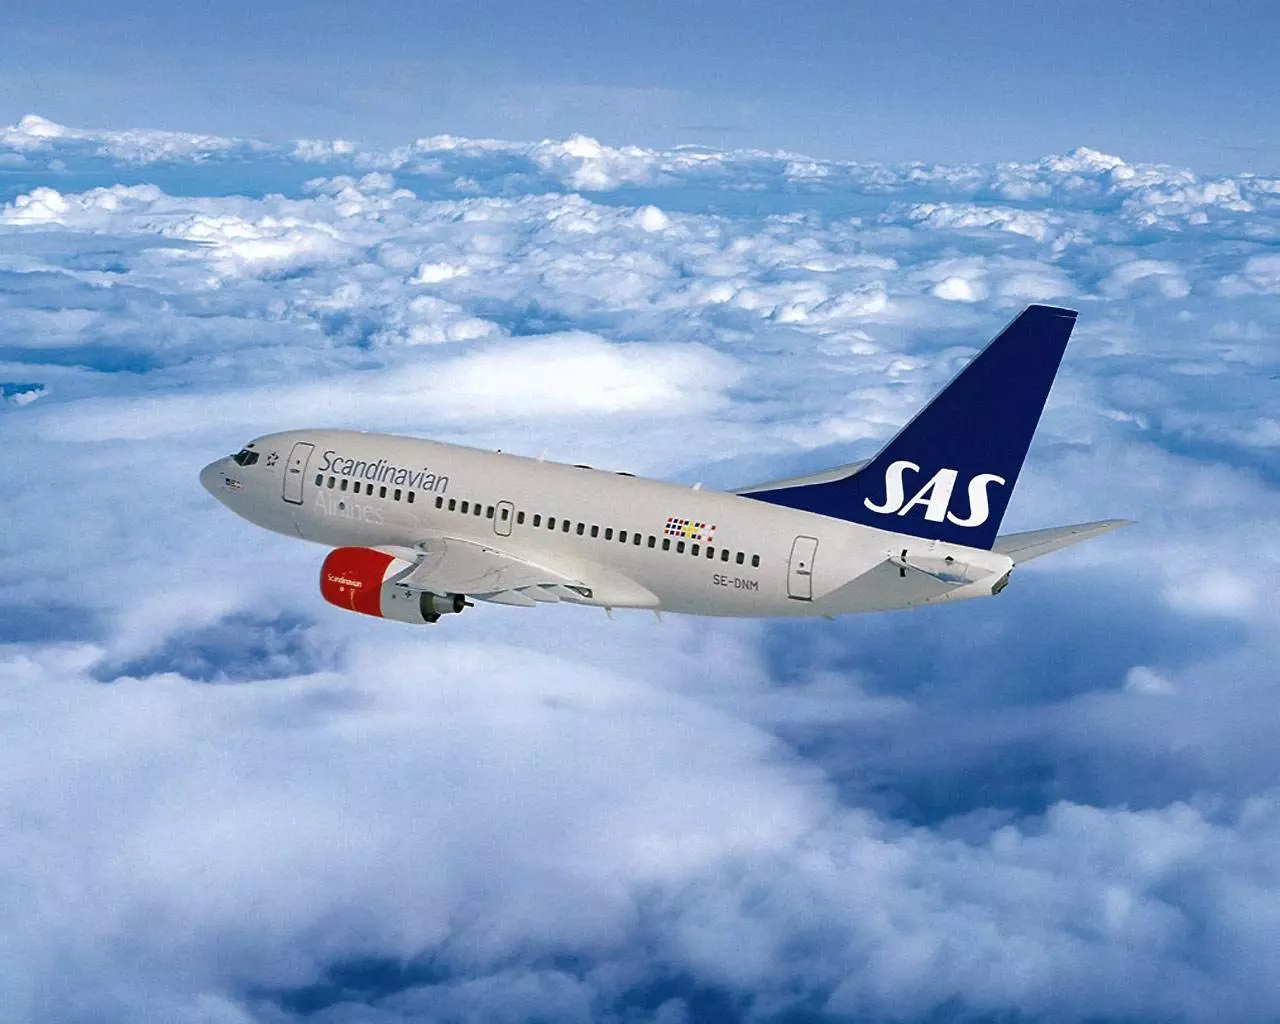 Sas scandinavian airlines